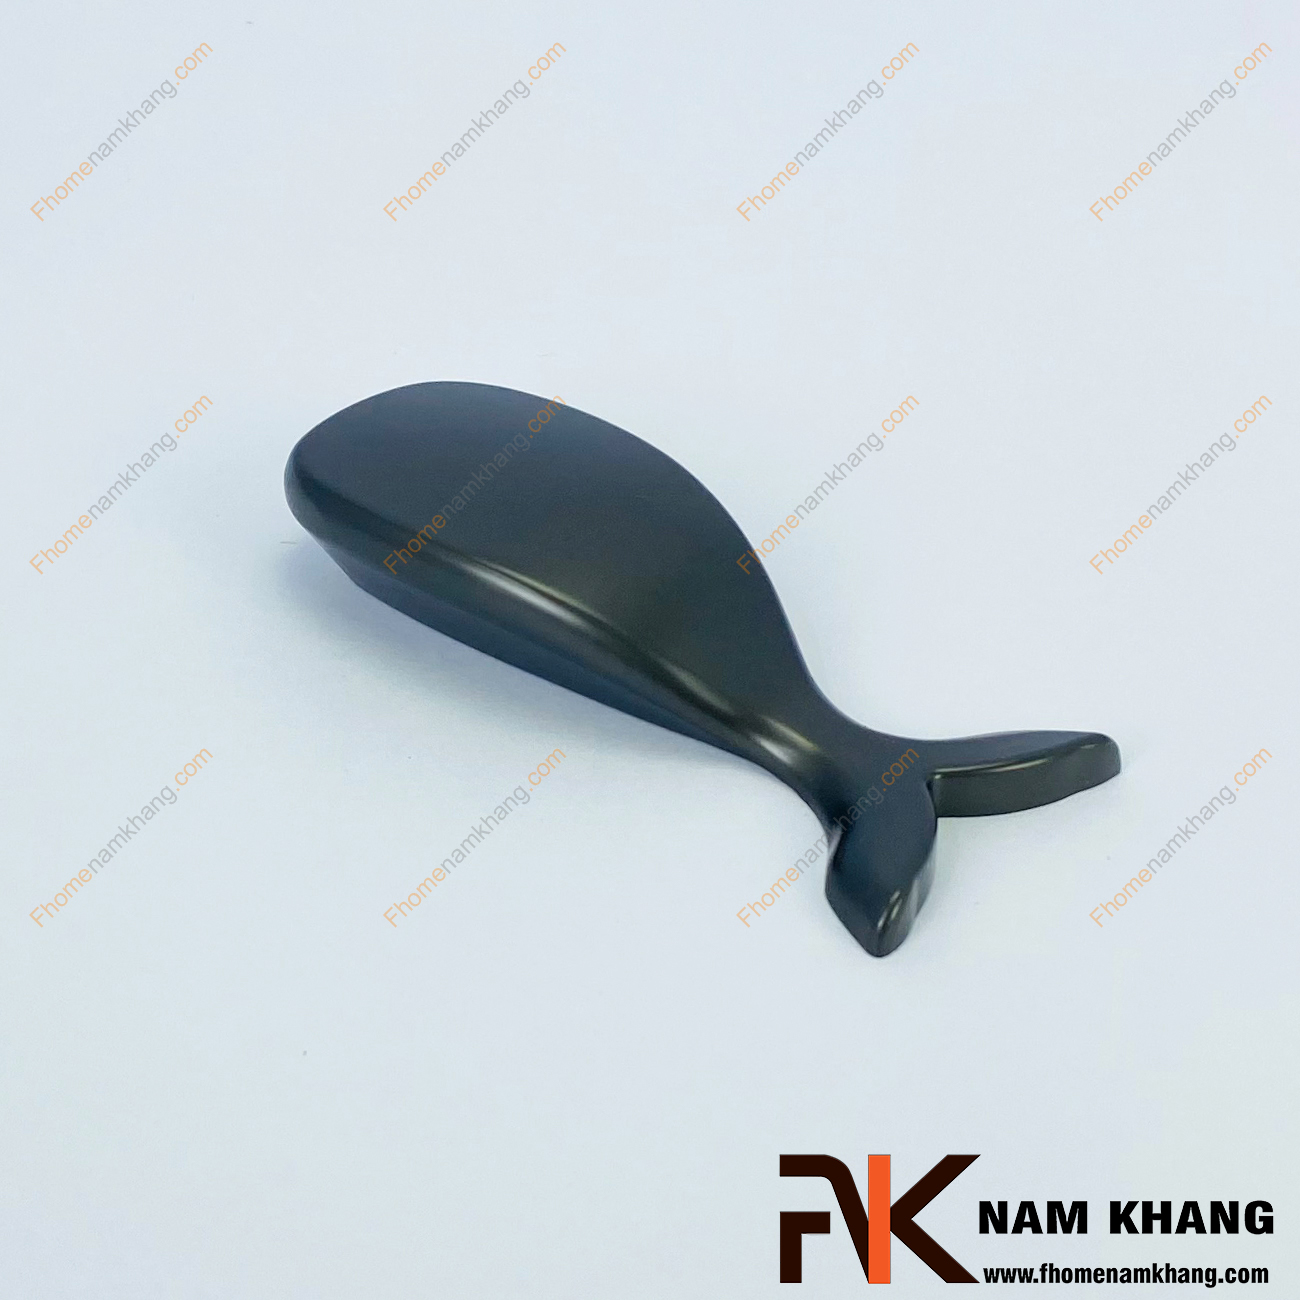 Tay nắm tủ dạng cá voi xám NK287CC-X là mẫu tay nắm tủ đặc biệt dạng cá voi độc đáo. Sản phẩm chất lượng từ hợp kim cao cấp, dễ dàng lắp đặt và gây ấn tượng mạnh ngay từ những ánh nhìn đầu tiên